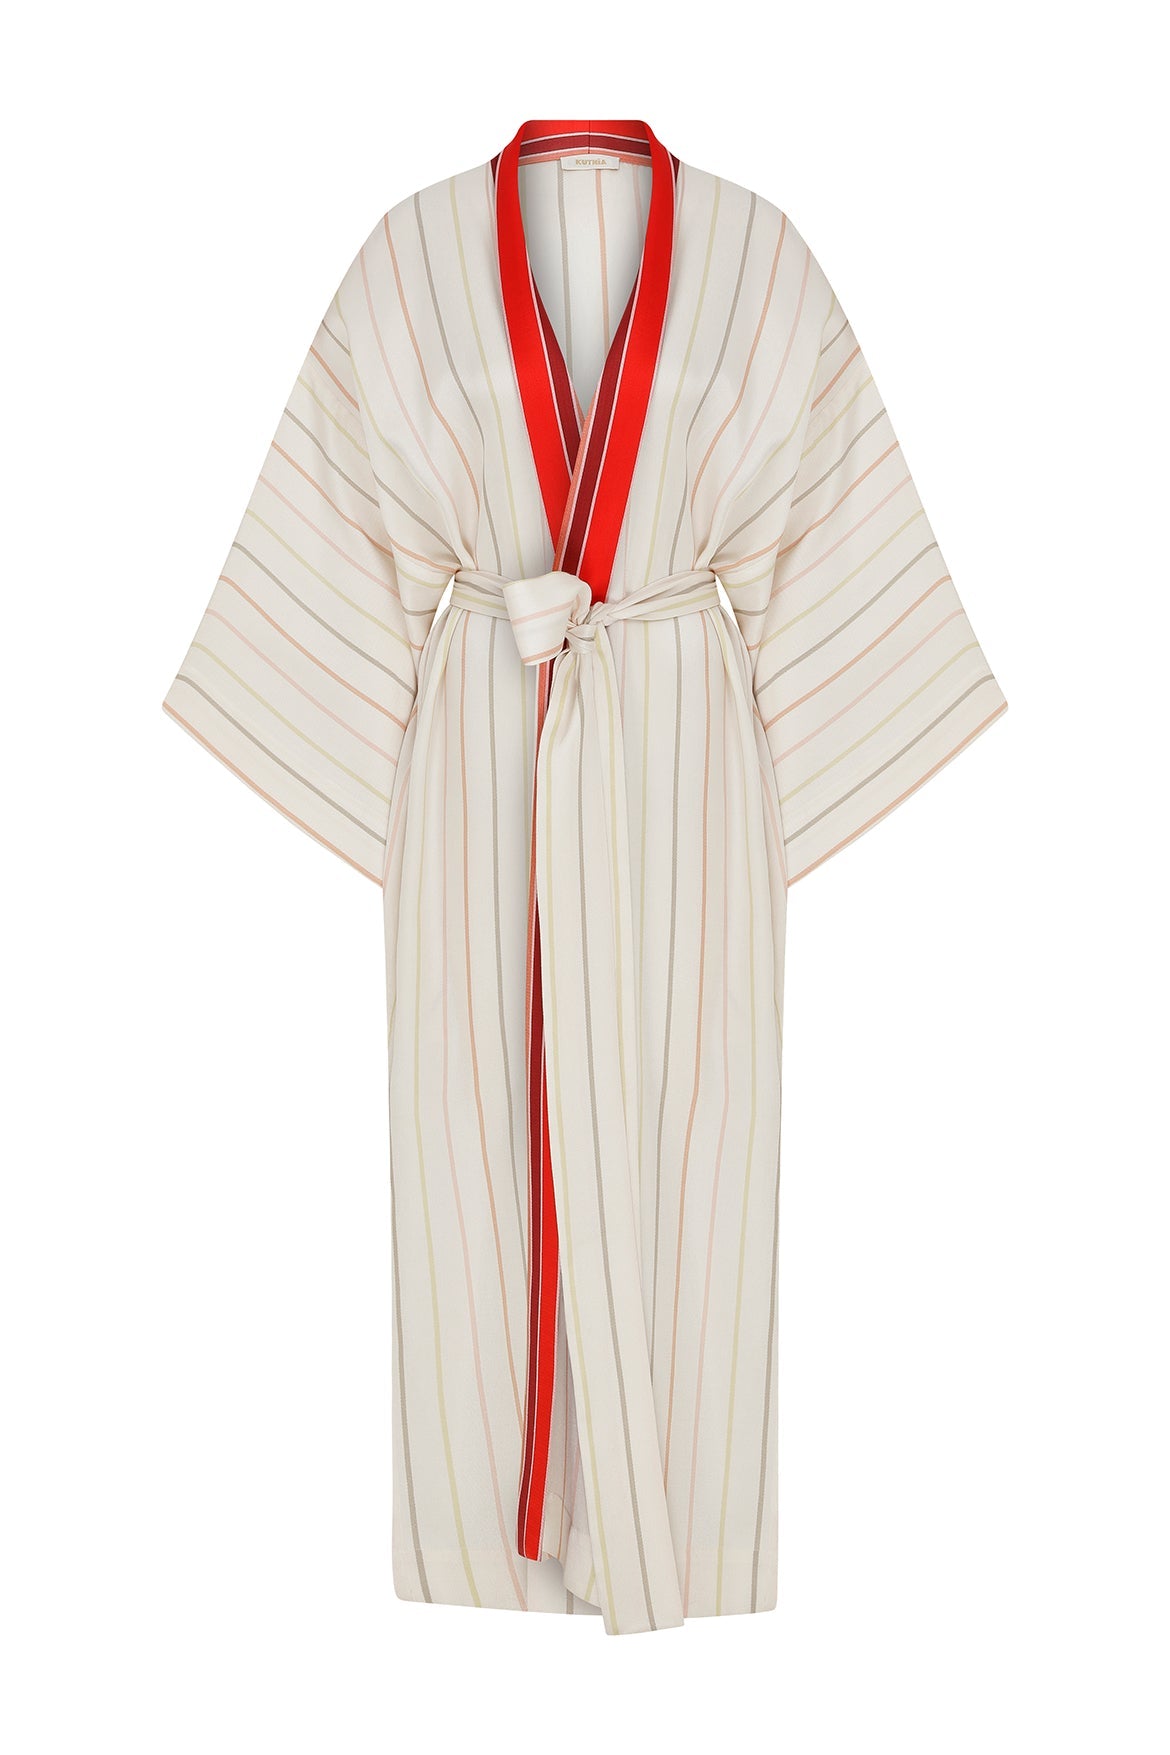 Classic Cream Striped Kimono